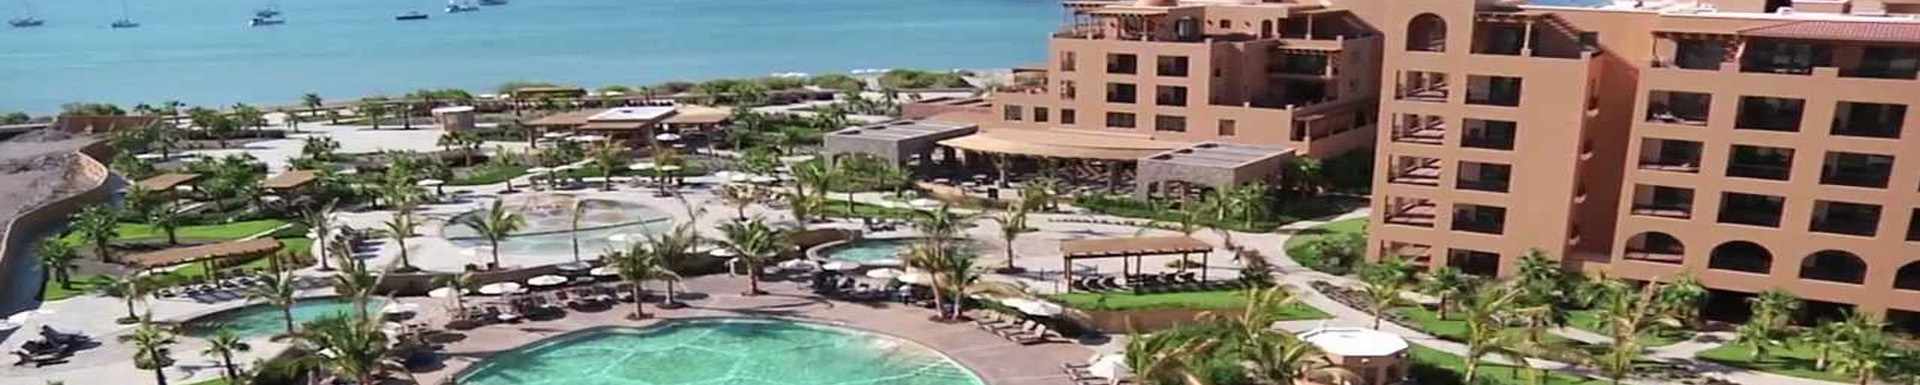 Villa del Palmar Beach Resort & Spa, Islands of Loreto